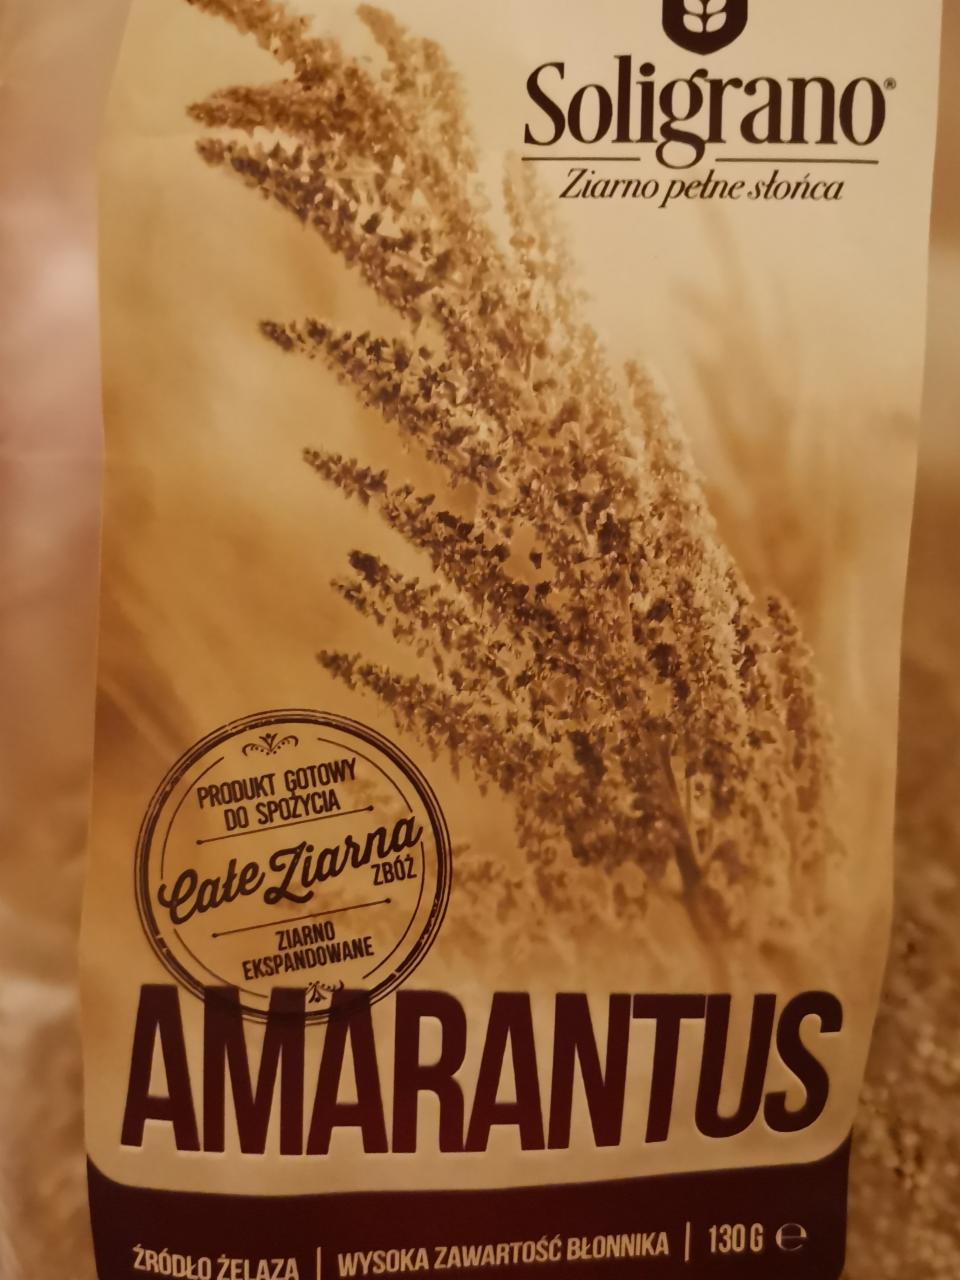 Zdjęcia - Soligrano amarantus